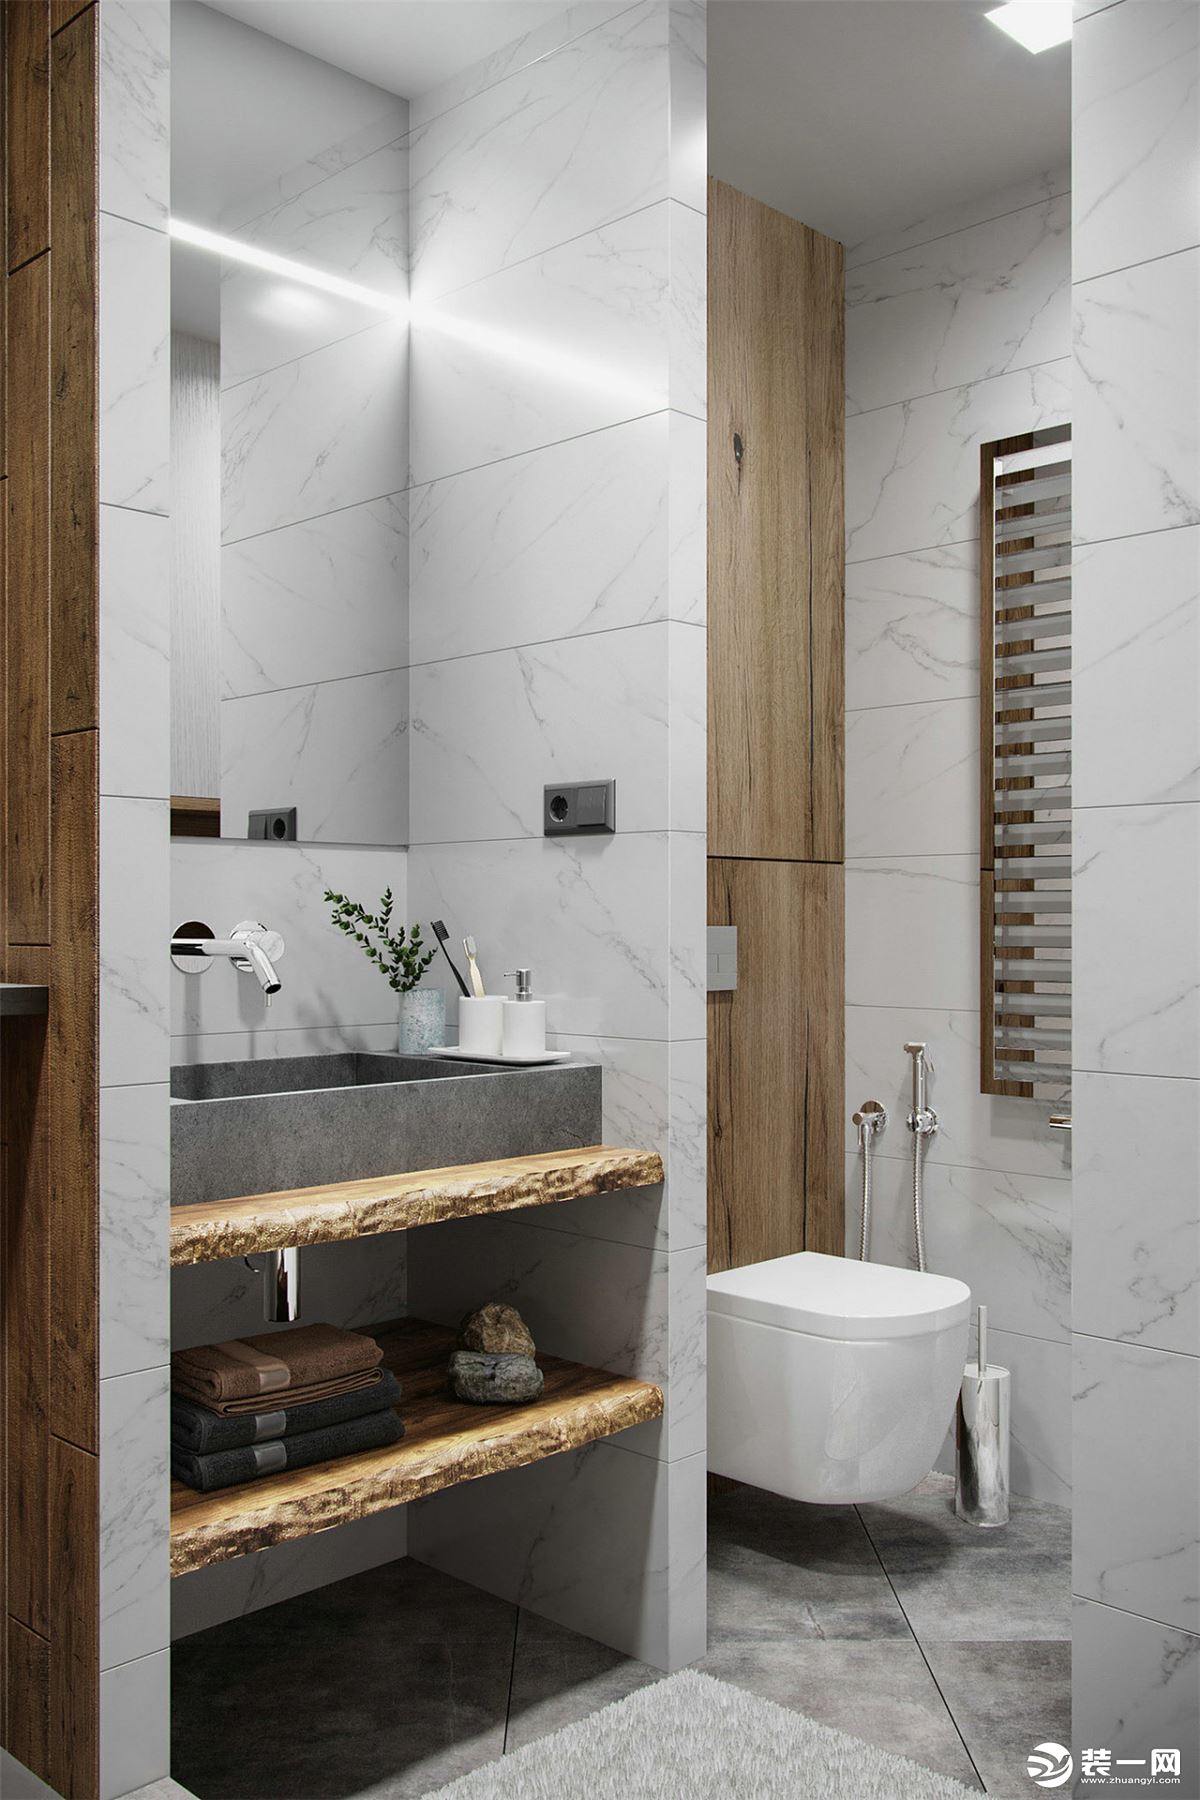 卫浴间的洗漱区与沐浴区进行半隔断，卫浴间做到空间的独立性很重要。